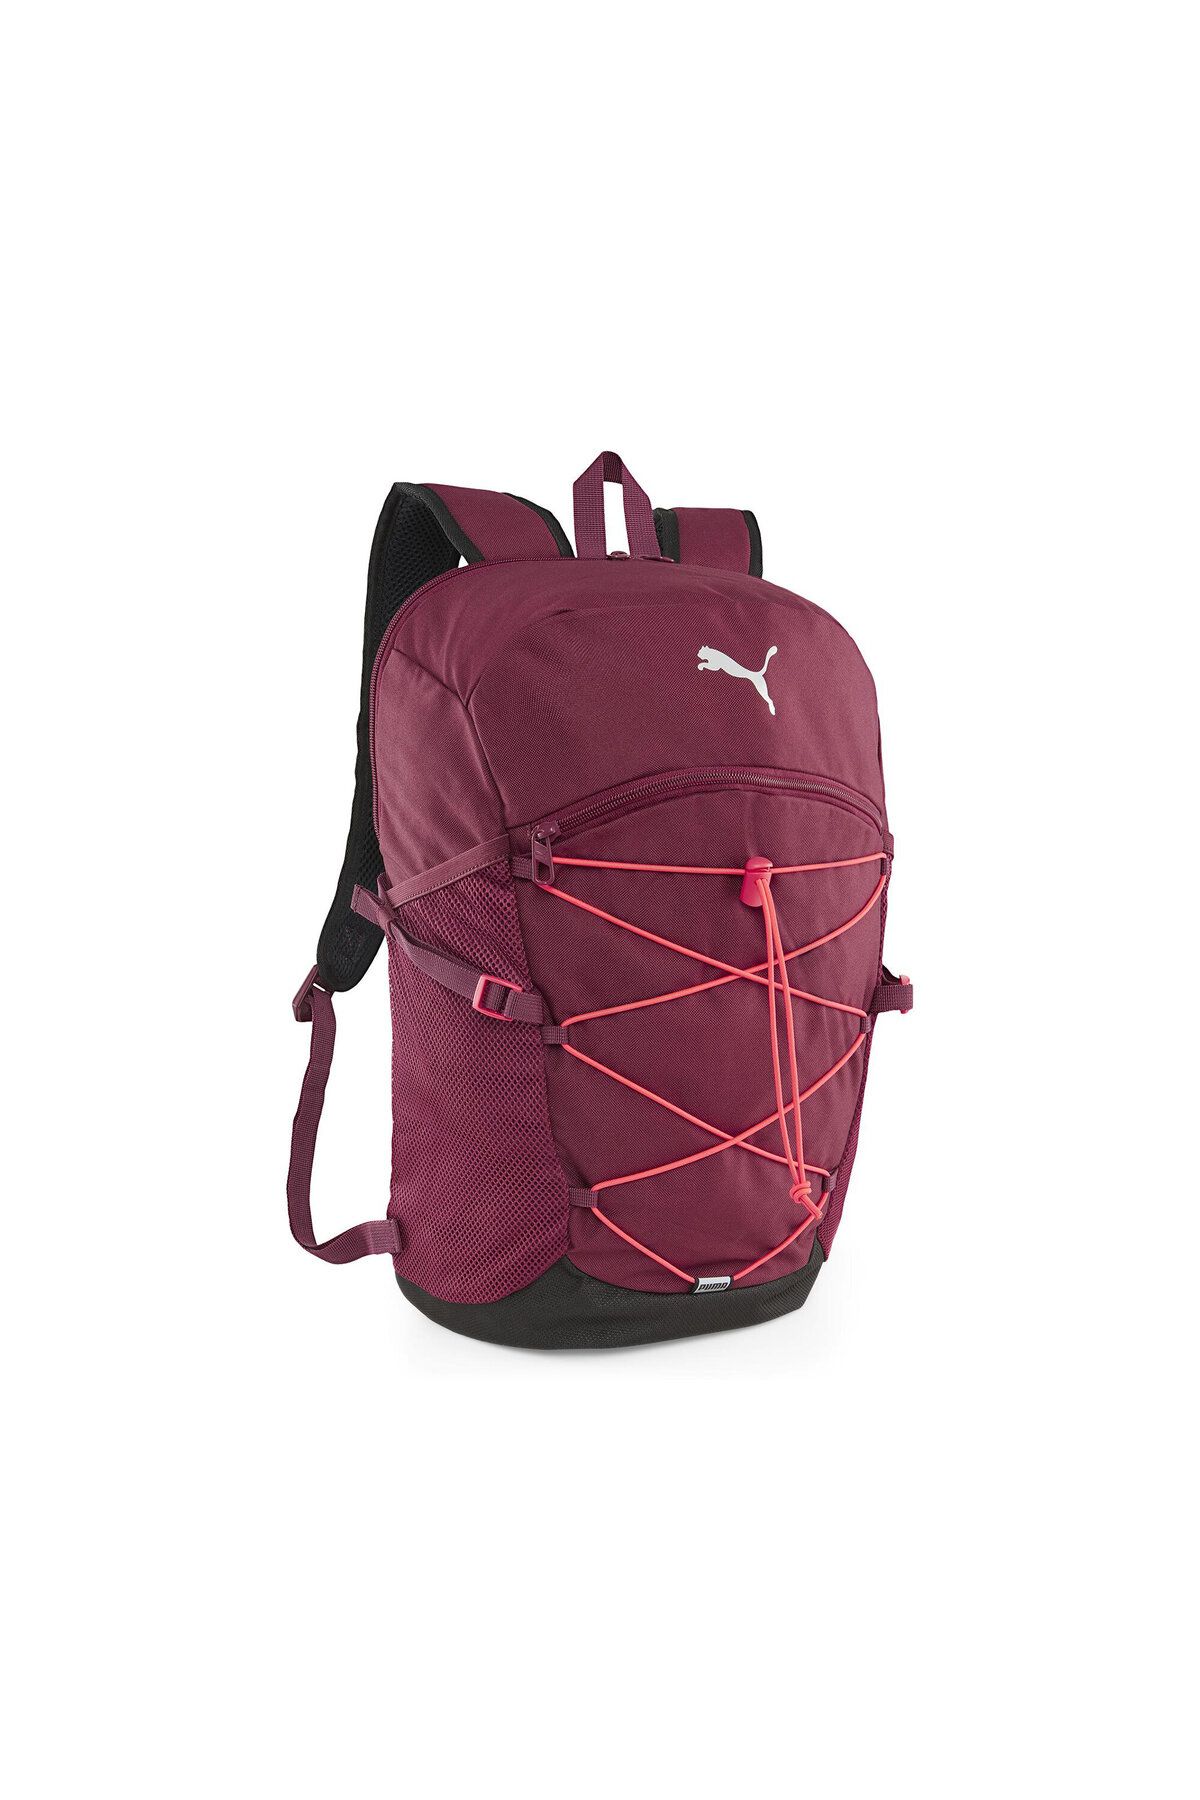 Puma Plus Pro Backpack Sırt Çantası 7952107 Kırmızı